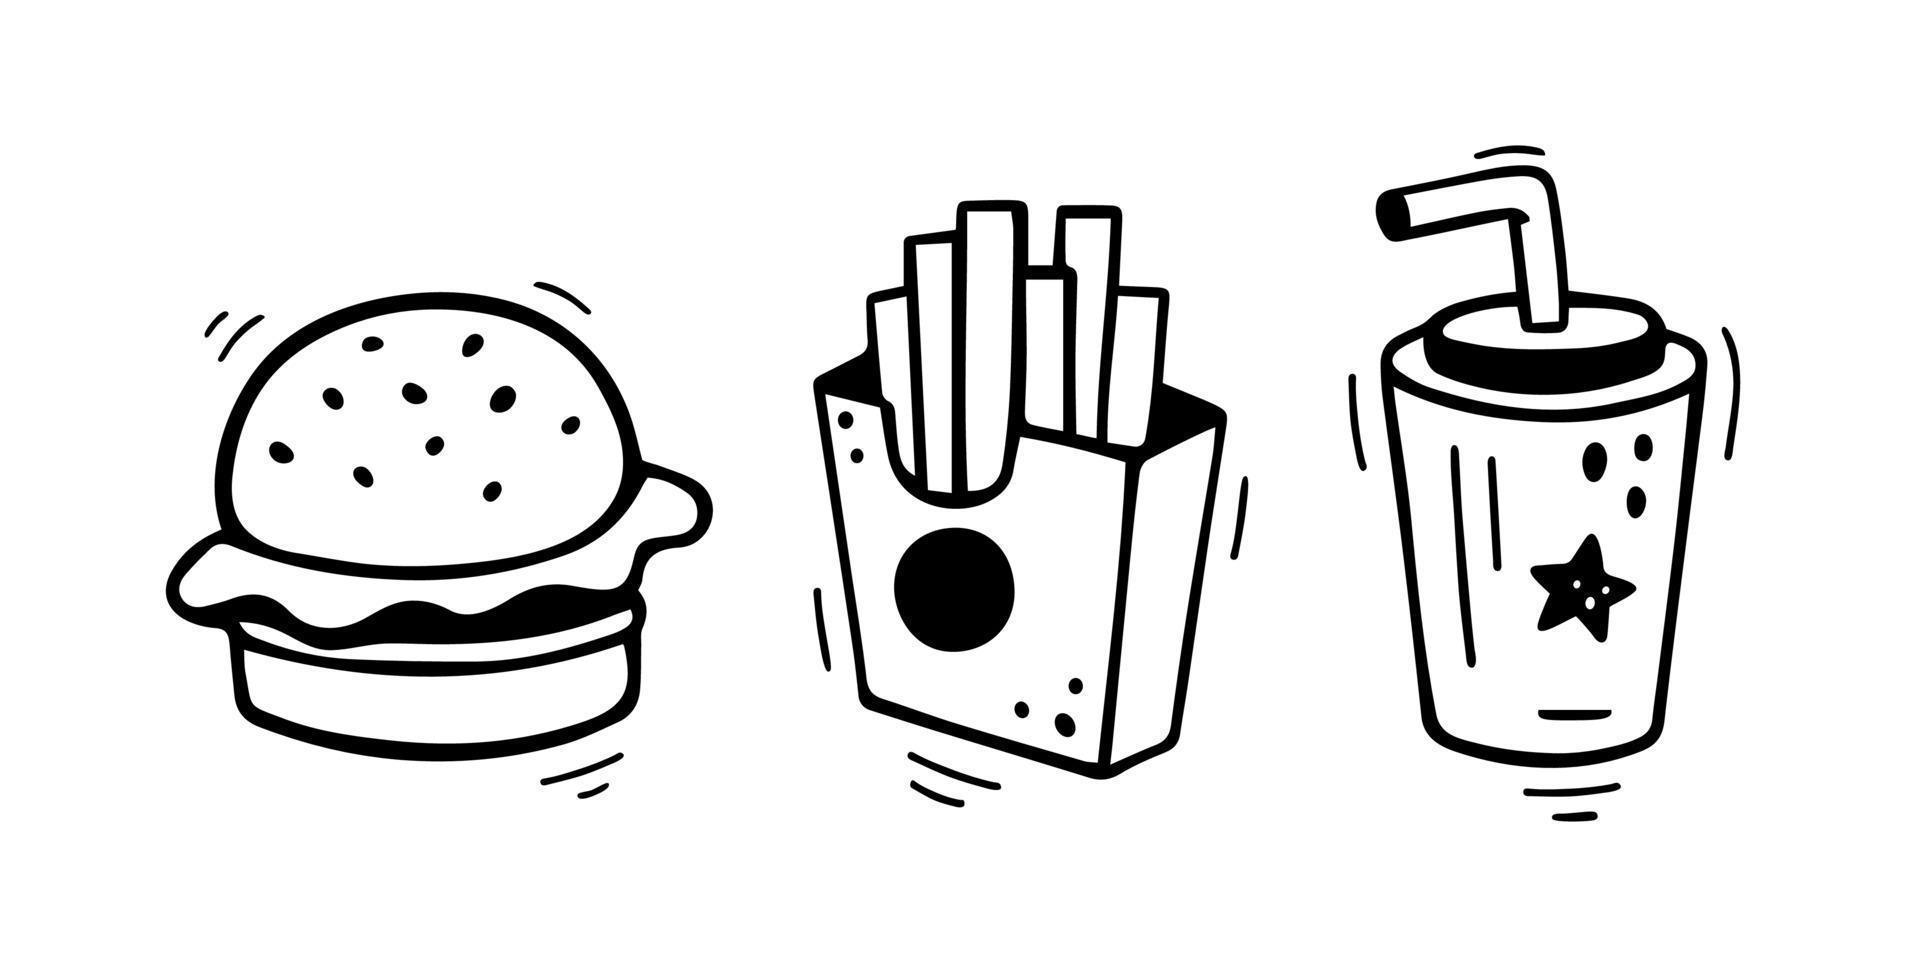 ensemble d'icônes de restauration rapide - burger, frites, gobelet en papier avec boisson. combo de restauration rapide dessiné à la main. style de croquis de doodle comique. illustration vectorielle vecteur